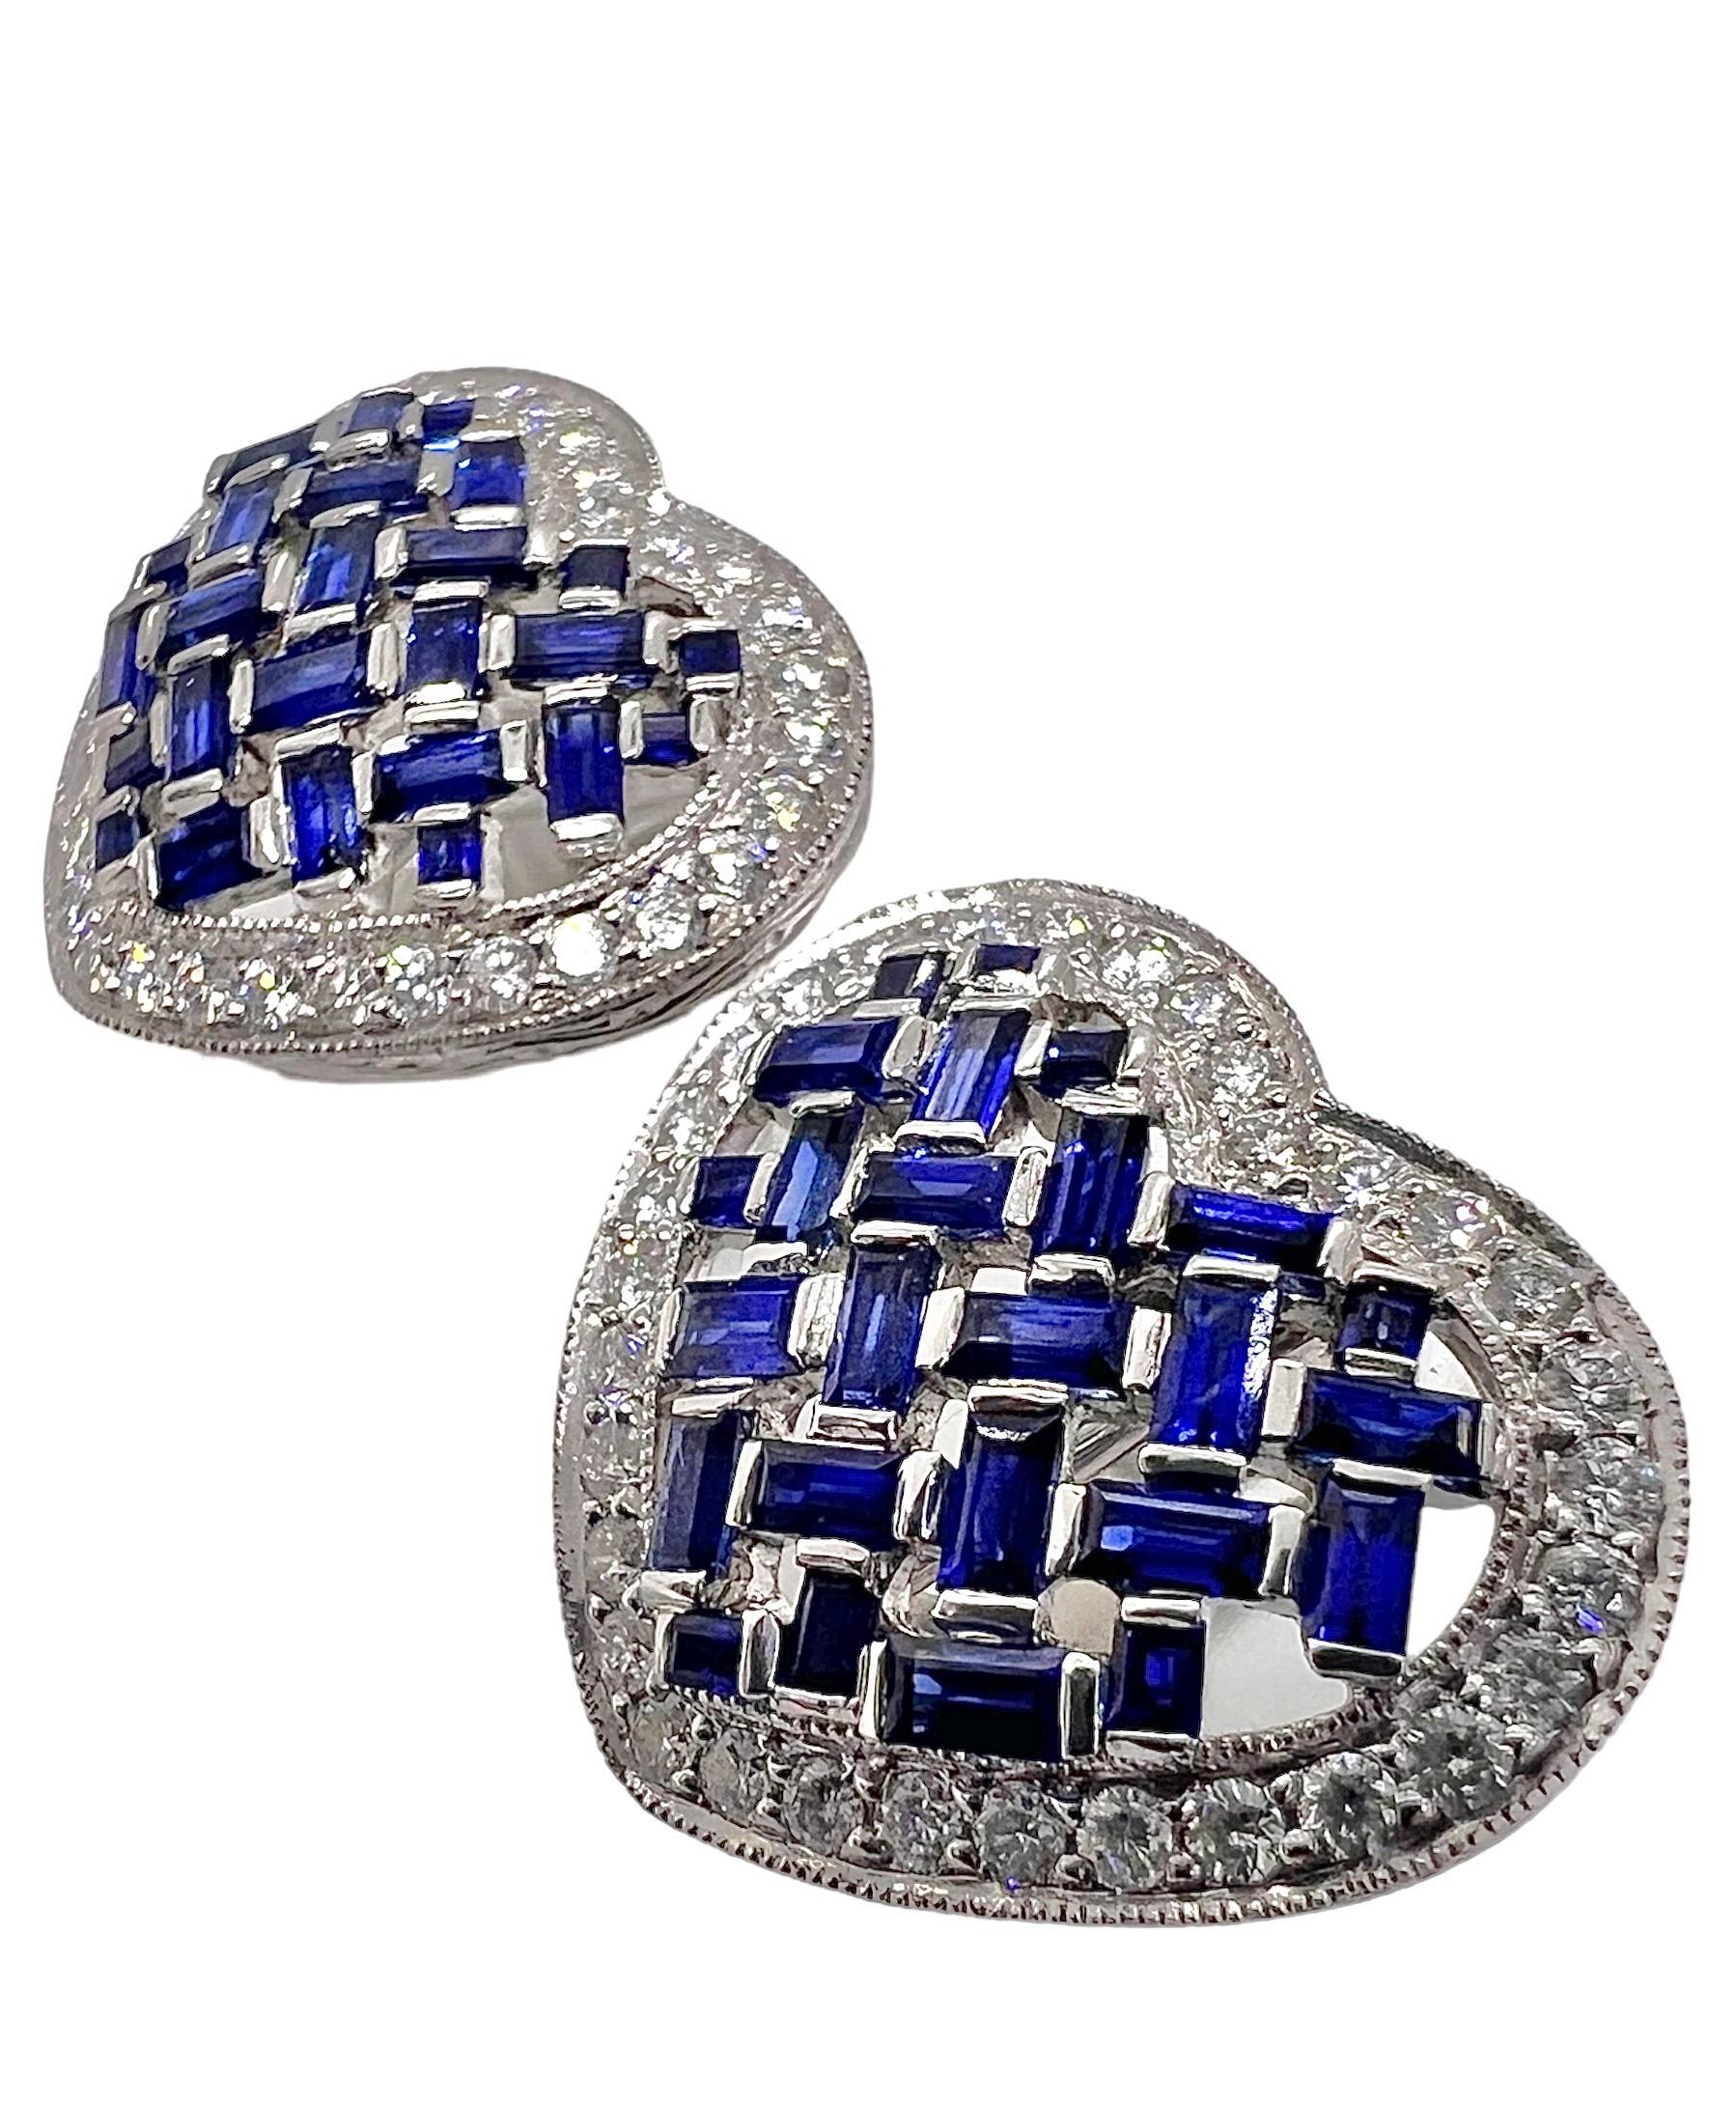 Herzförmige Ohrringe aus Platin mit 1,15 Karat Diamanten und 2,69 Karat blauen Saphiren. 

Sophia D von Joseph Dardashti LTD ist seit 35 Jahren weltweit bekannt und lässt sich vom klassischen Art-Déco-Design inspirieren, das mit modernen